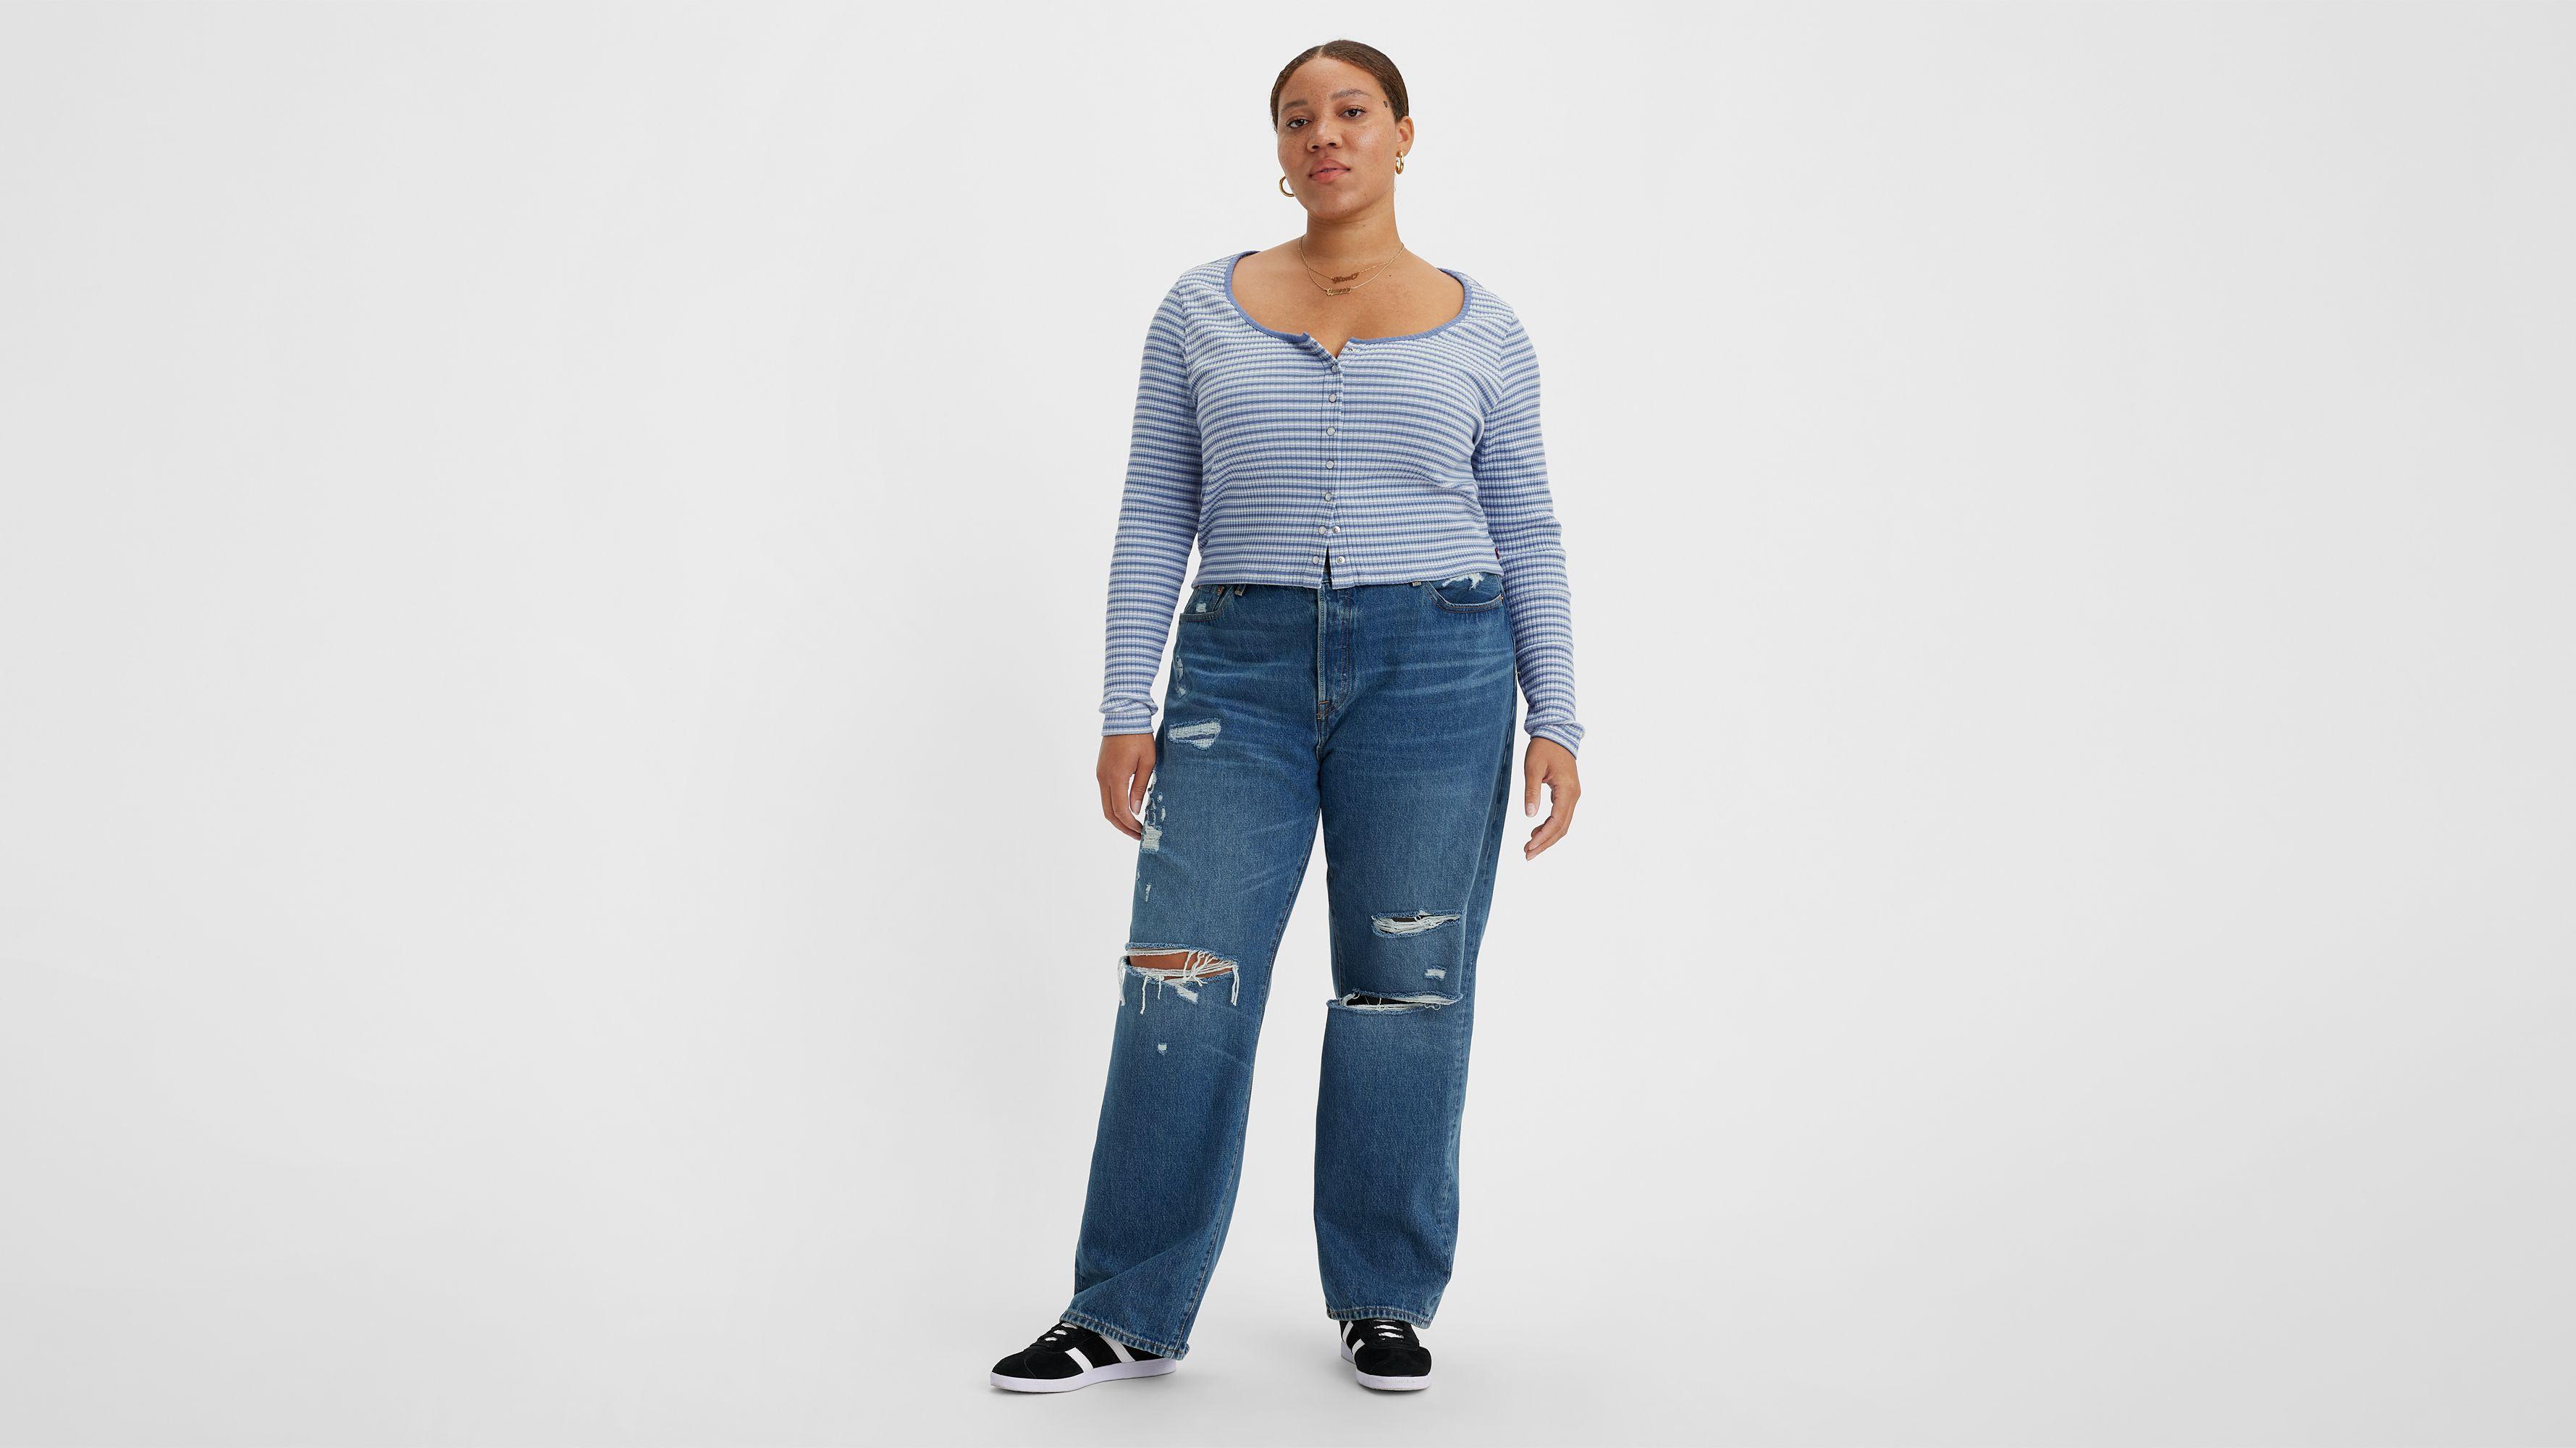 Levi's ‘90s Women's Jeans (Plus Size) Product Image